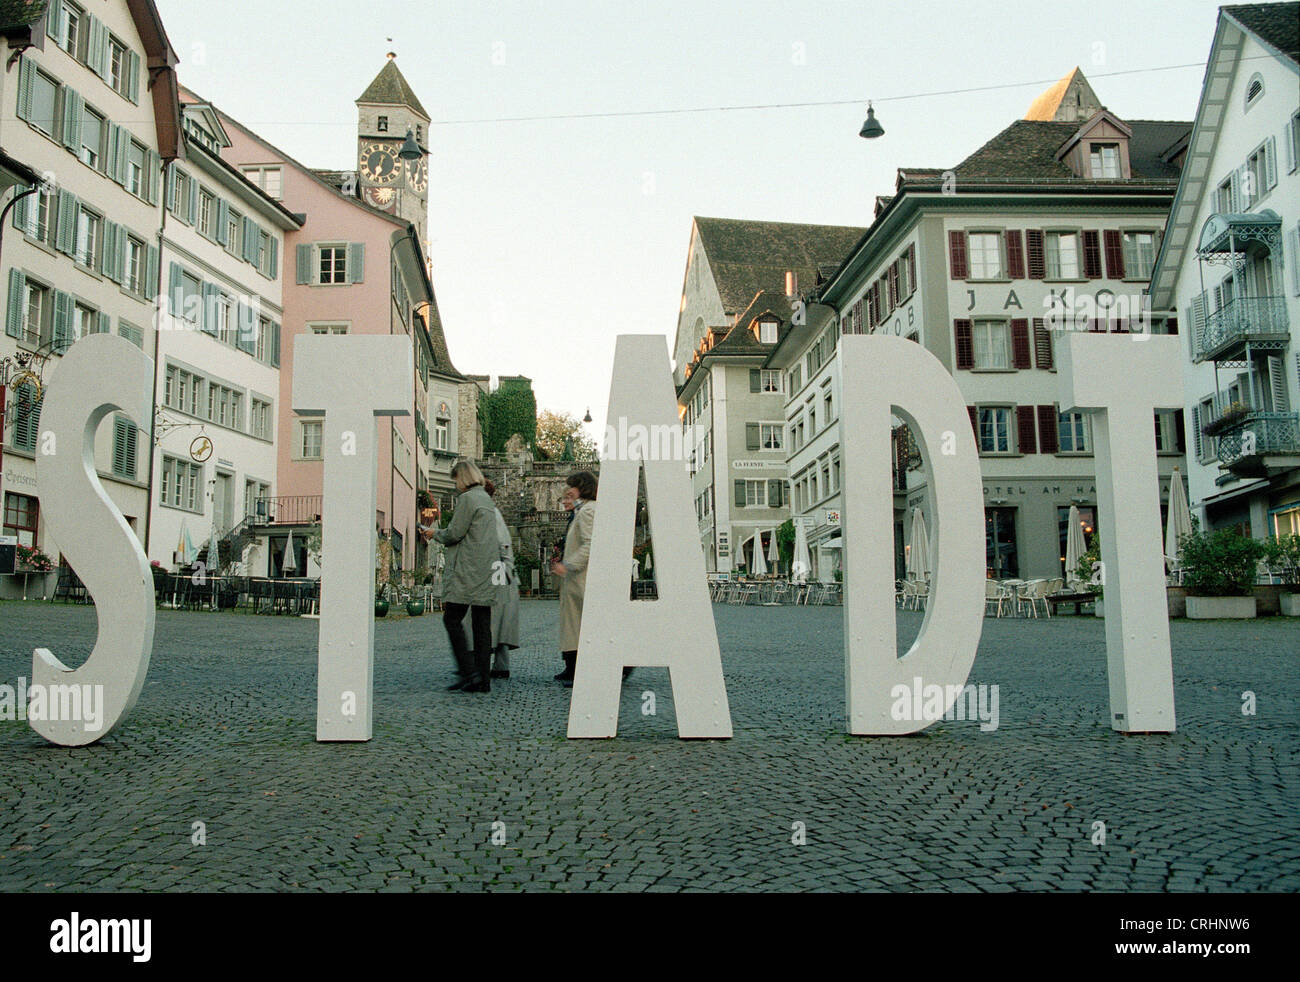 Rapperswil, Schweiz, über lebensgroße Buchstaben in der Innenstadt  Stockfotografie - Alamy